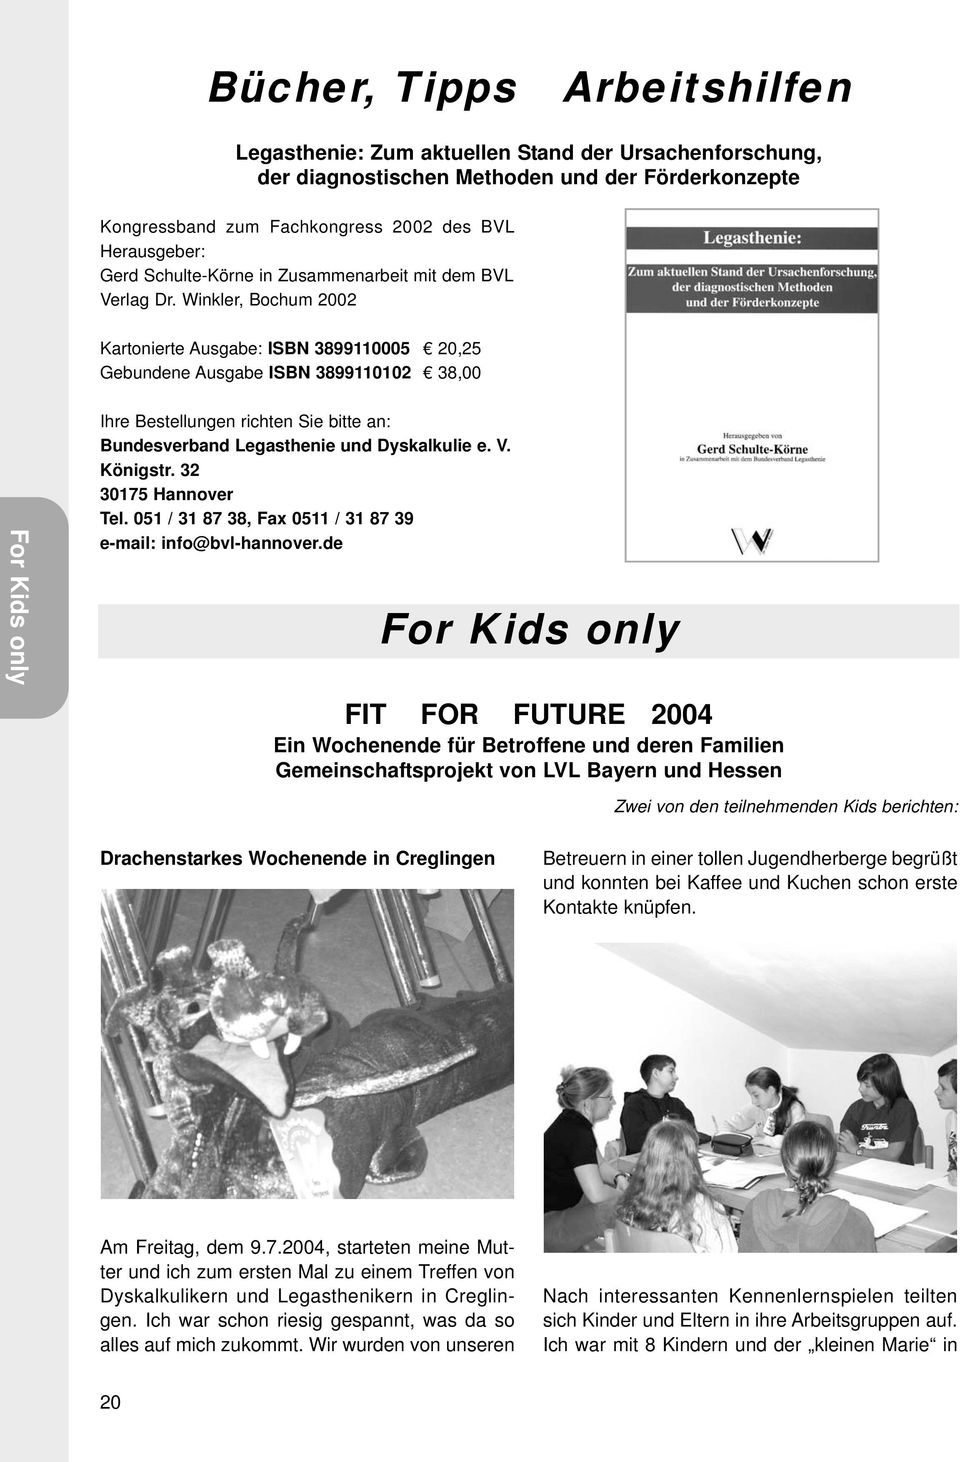 Winkler, Bochum 2002 Kartonierte Ausgabe: ISBN 3899110005 20,25 Gebundene Ausgabe ISBN 3899110102 38,00 For Kids only Ihre Bestellungen richten Sie bitte an: Bundesverband Legasthenie und Dyskalkulie